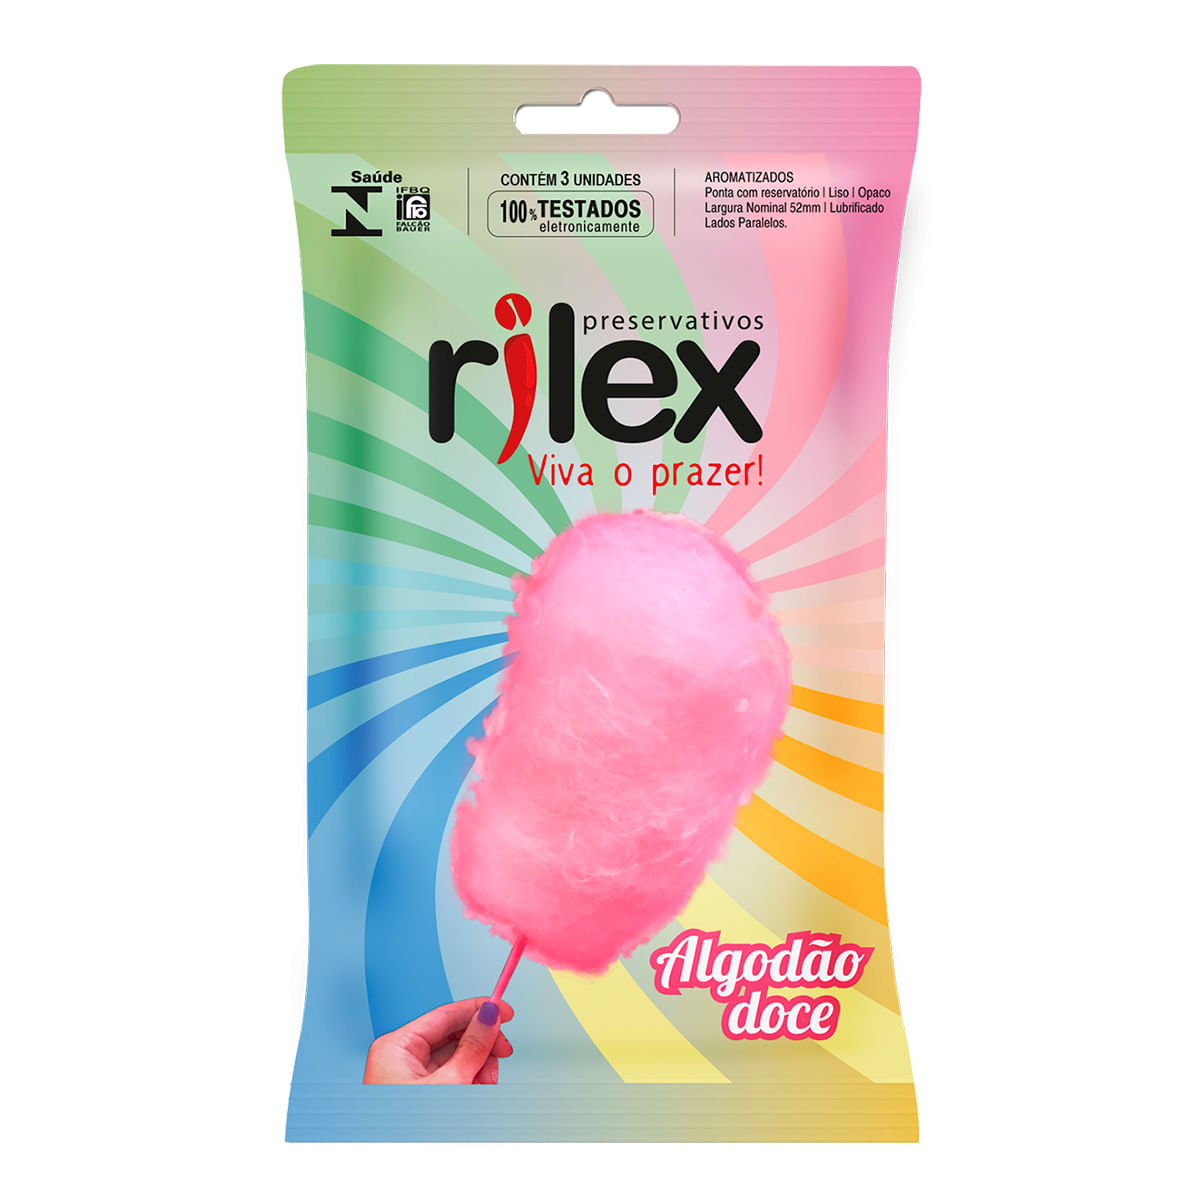 Preservativo Lubrificado com Aroma de Algodão Doce 3 Unidades Rilex